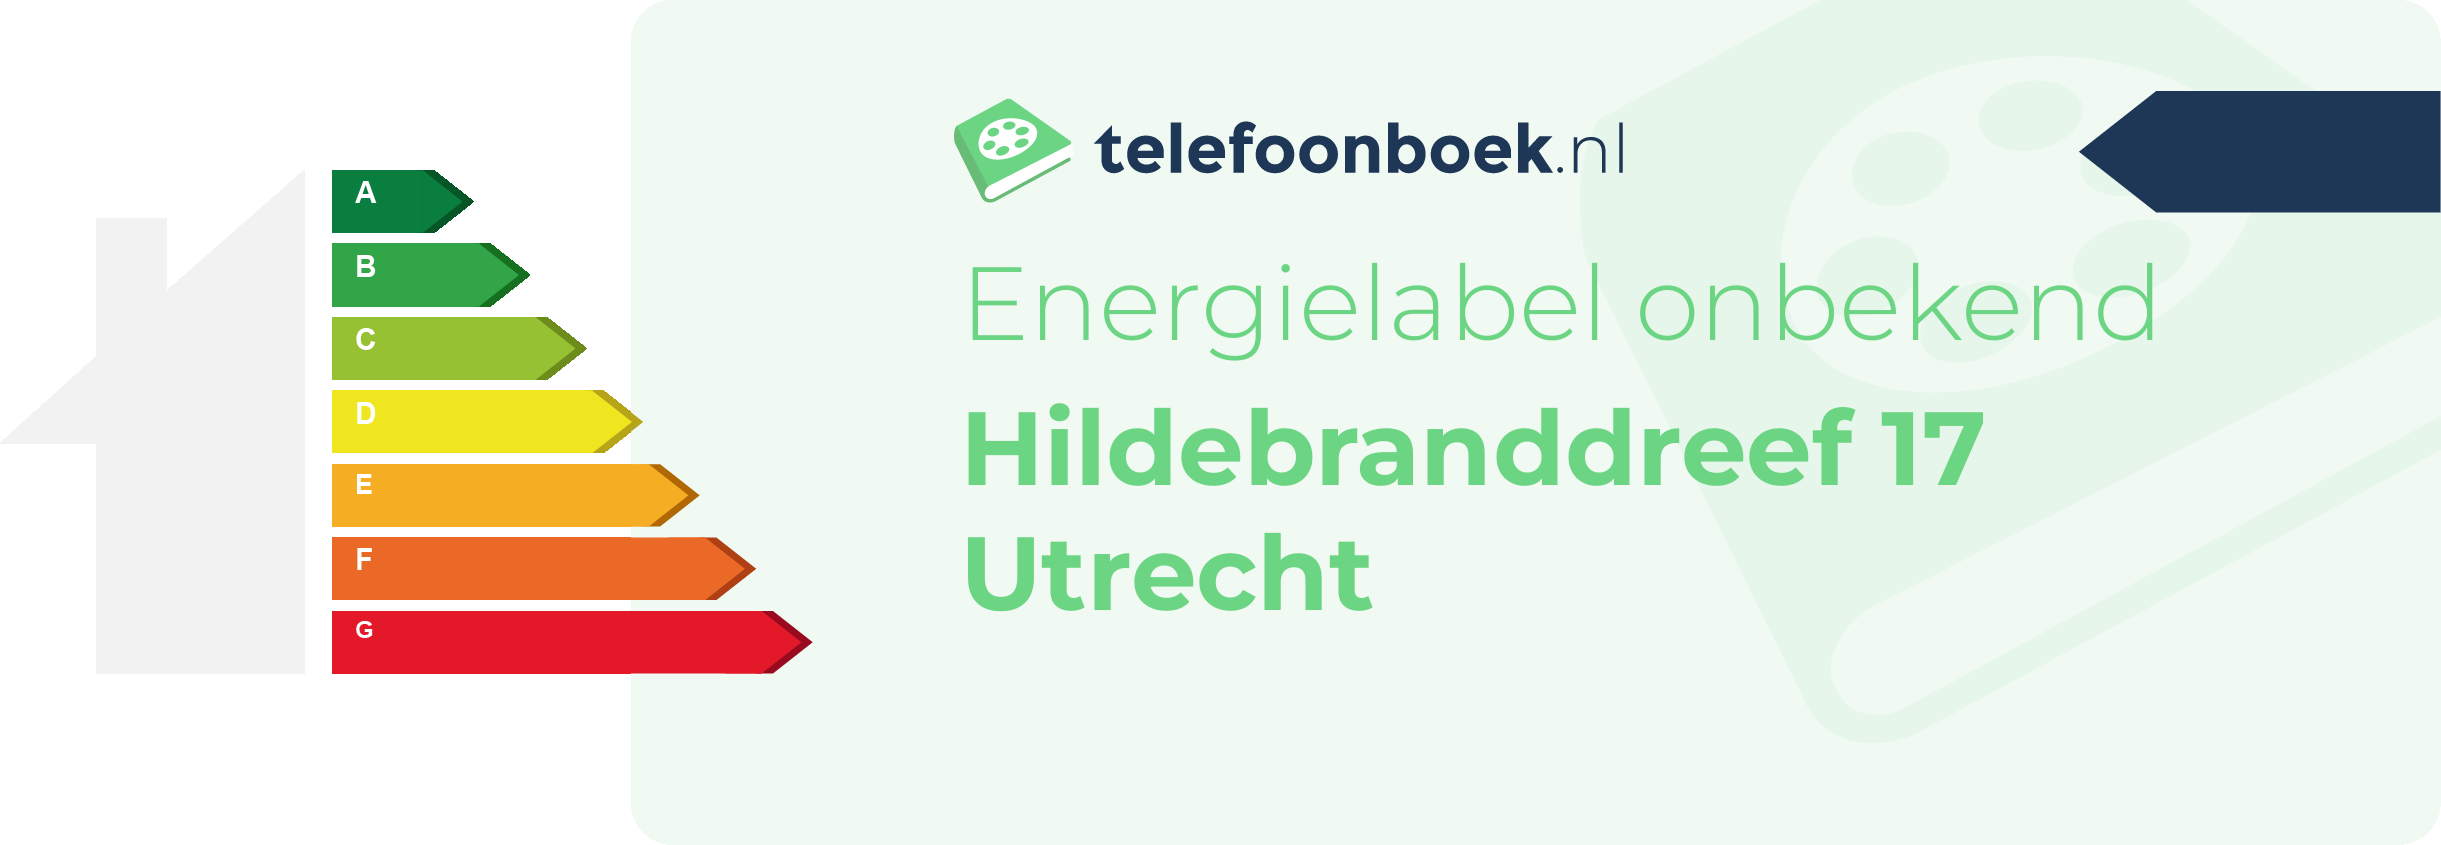 Energielabel Hildebranddreef 17 Utrecht